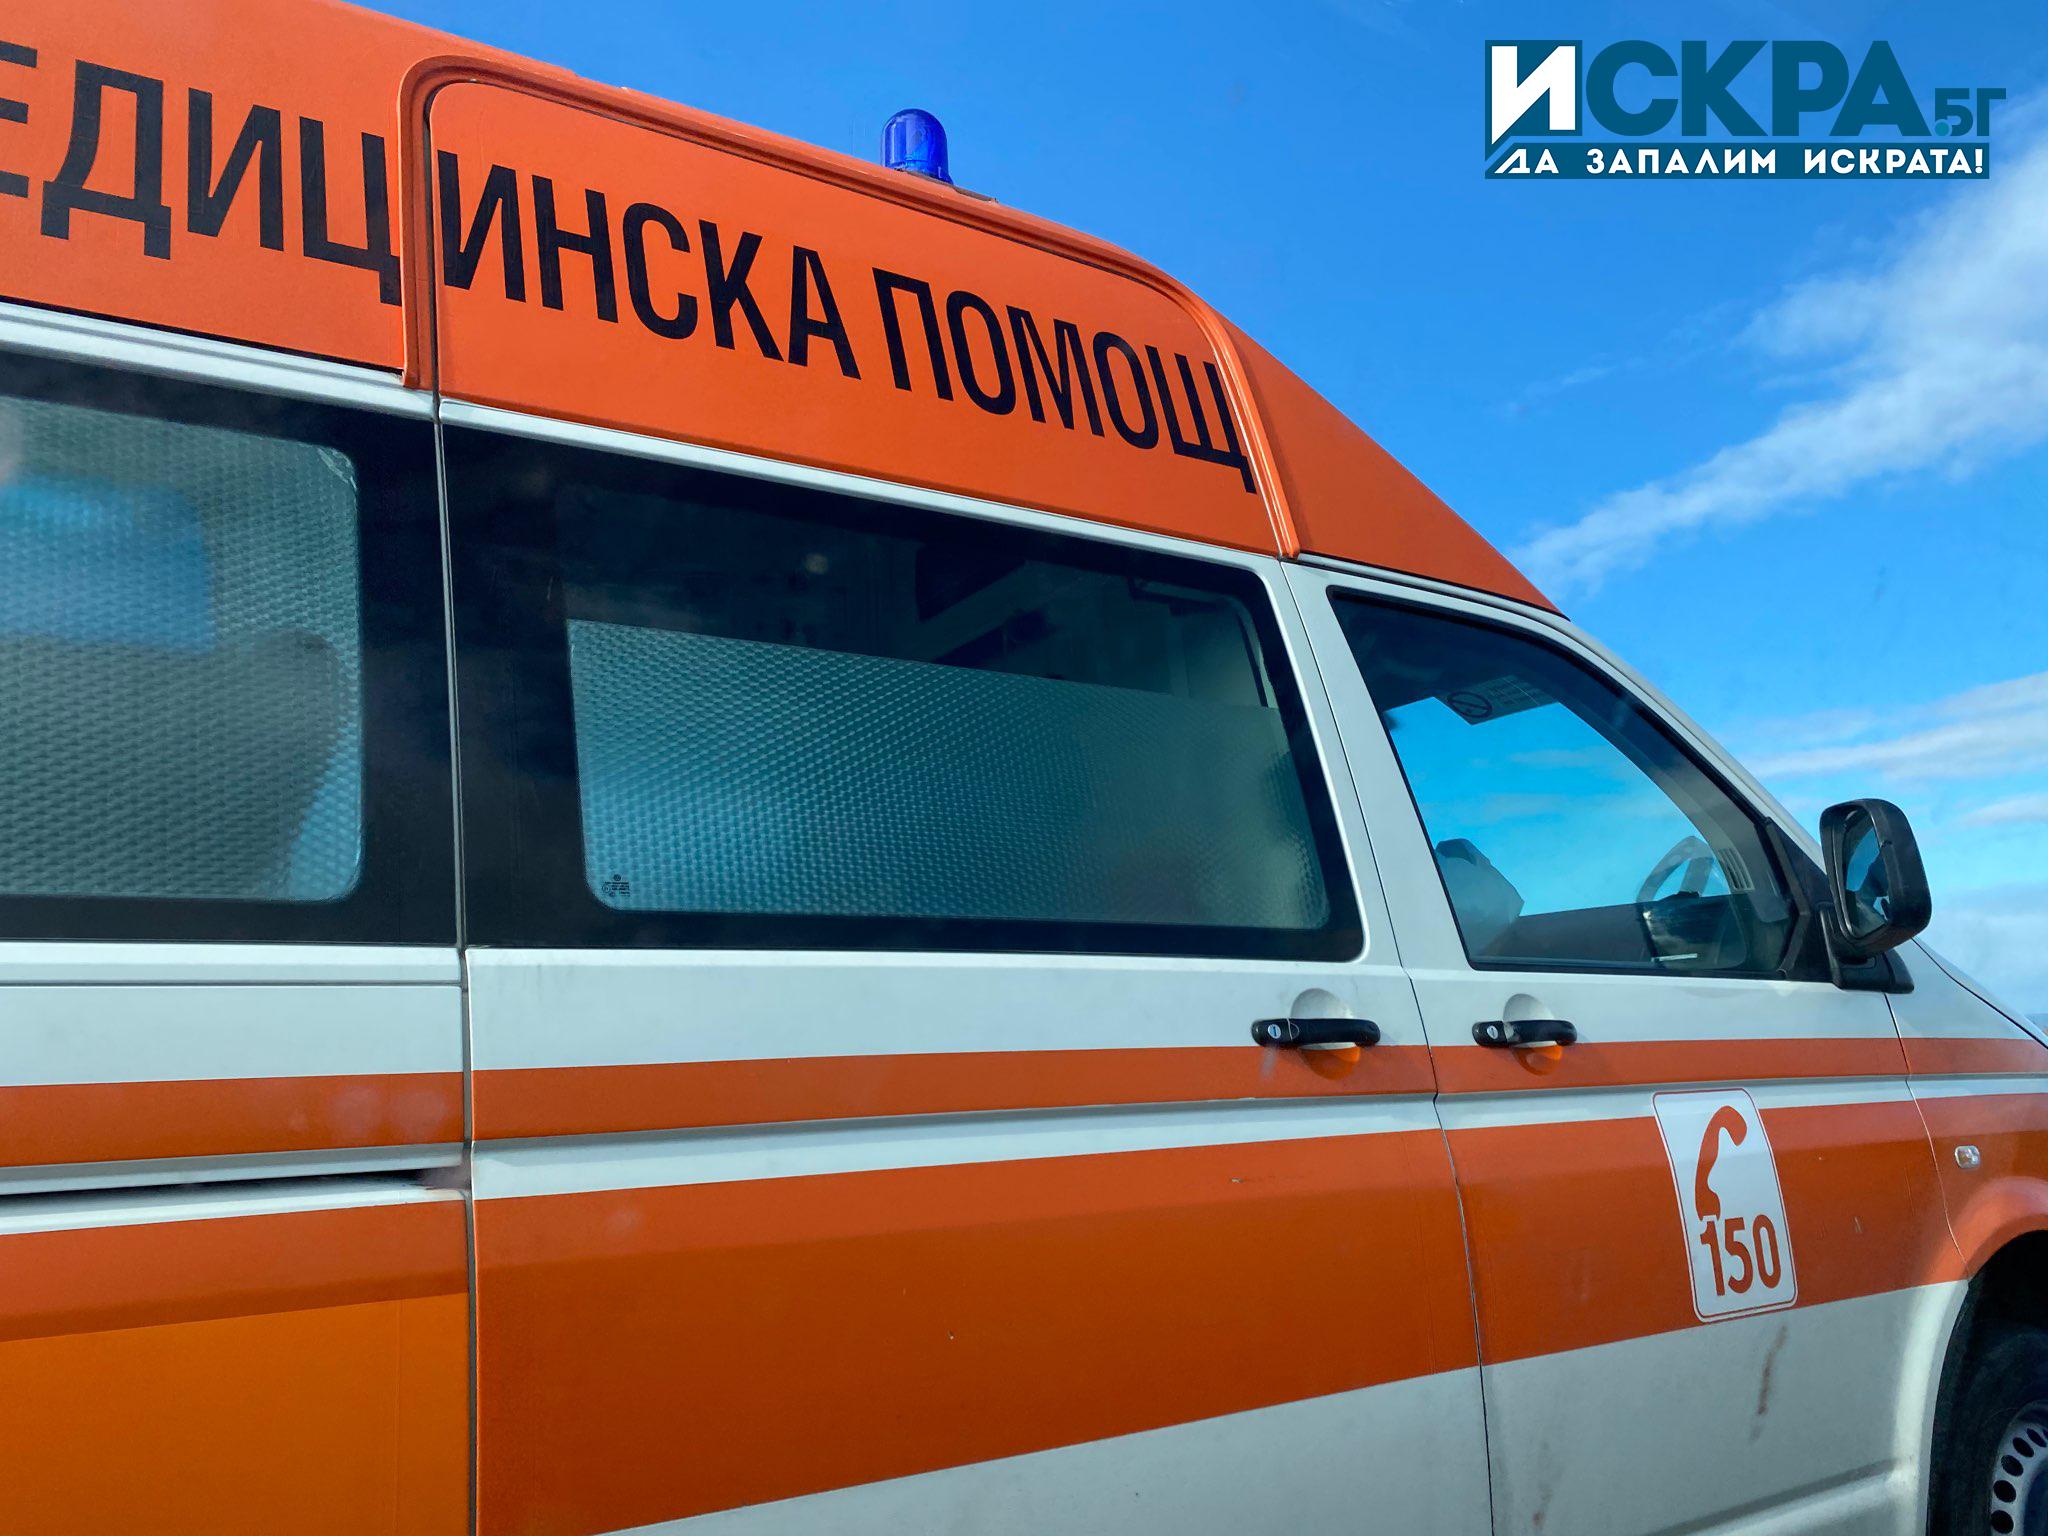 42 годишен мъж е пострадал при трудова злополука в Кюстендилско съобщиха